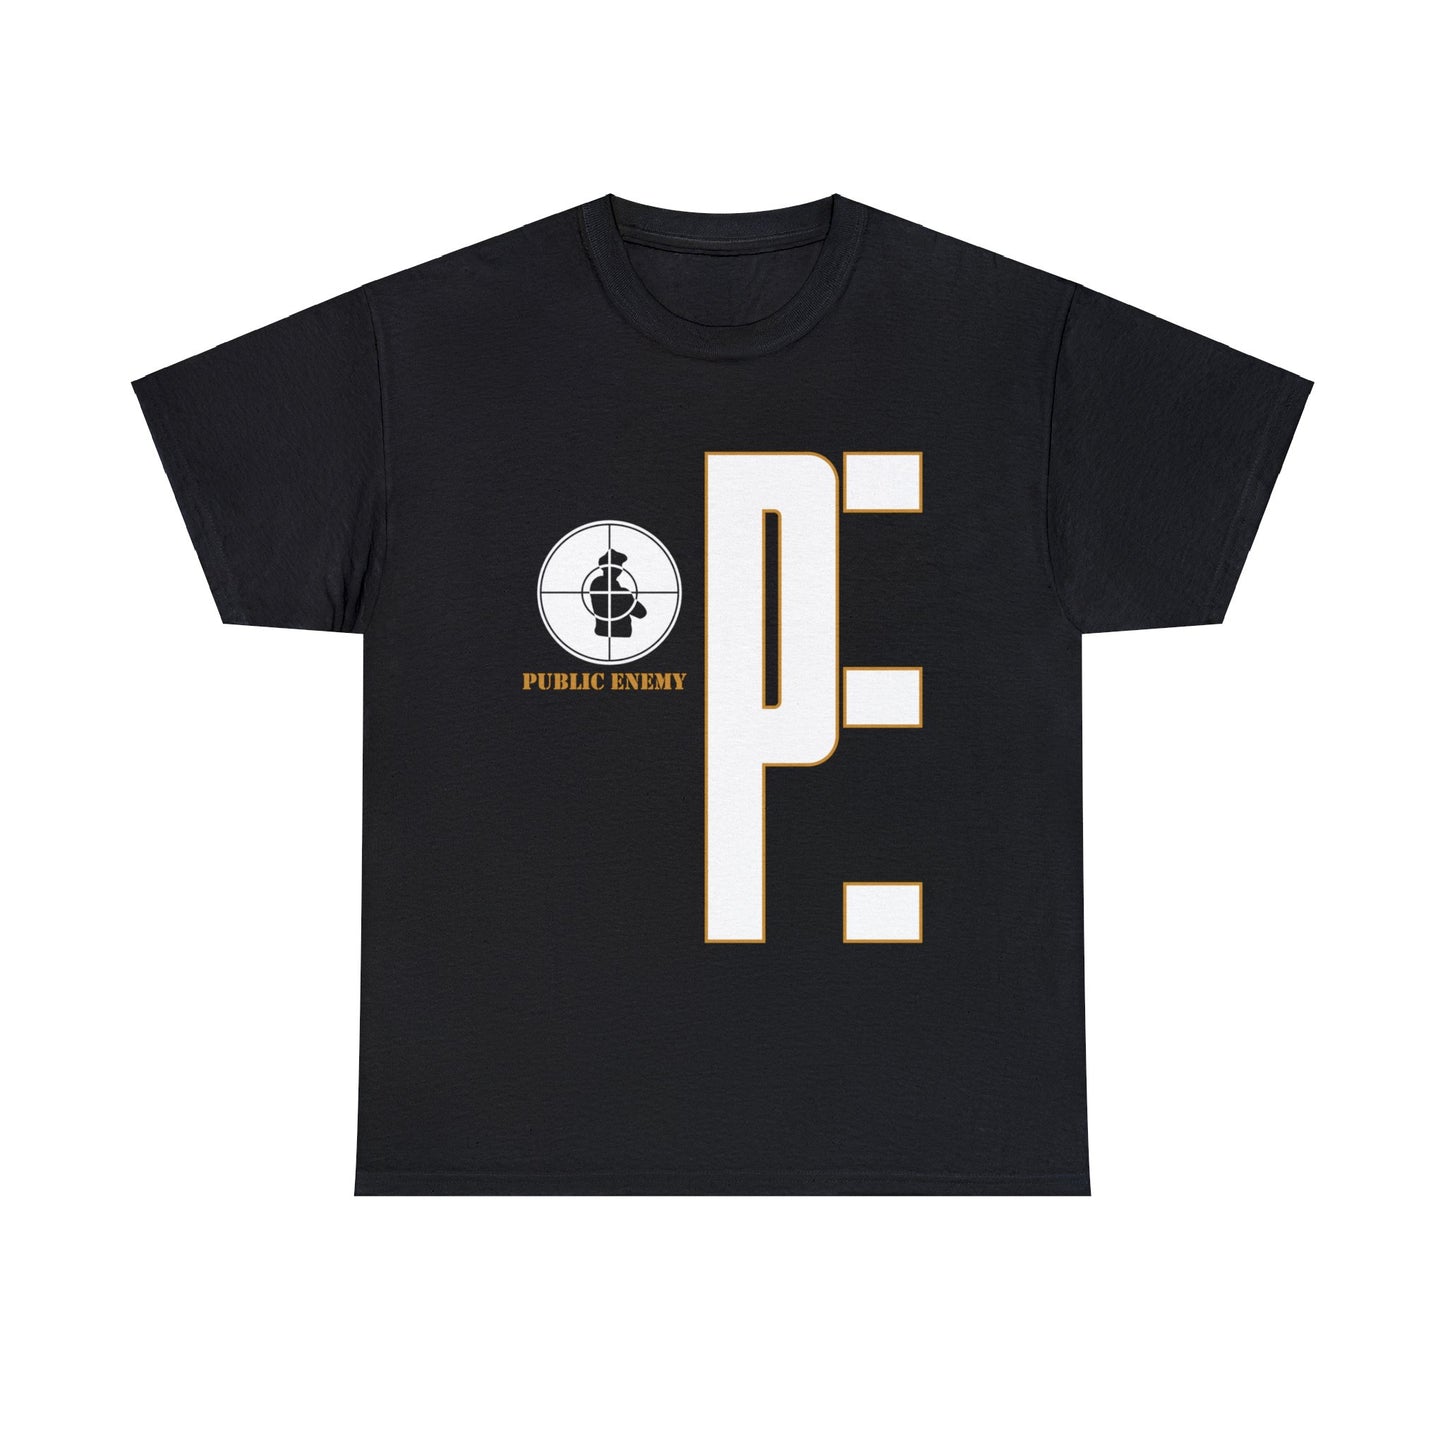 PUBLIC ENEMY PE Script Logo Tour 90s T-shirt for Sale